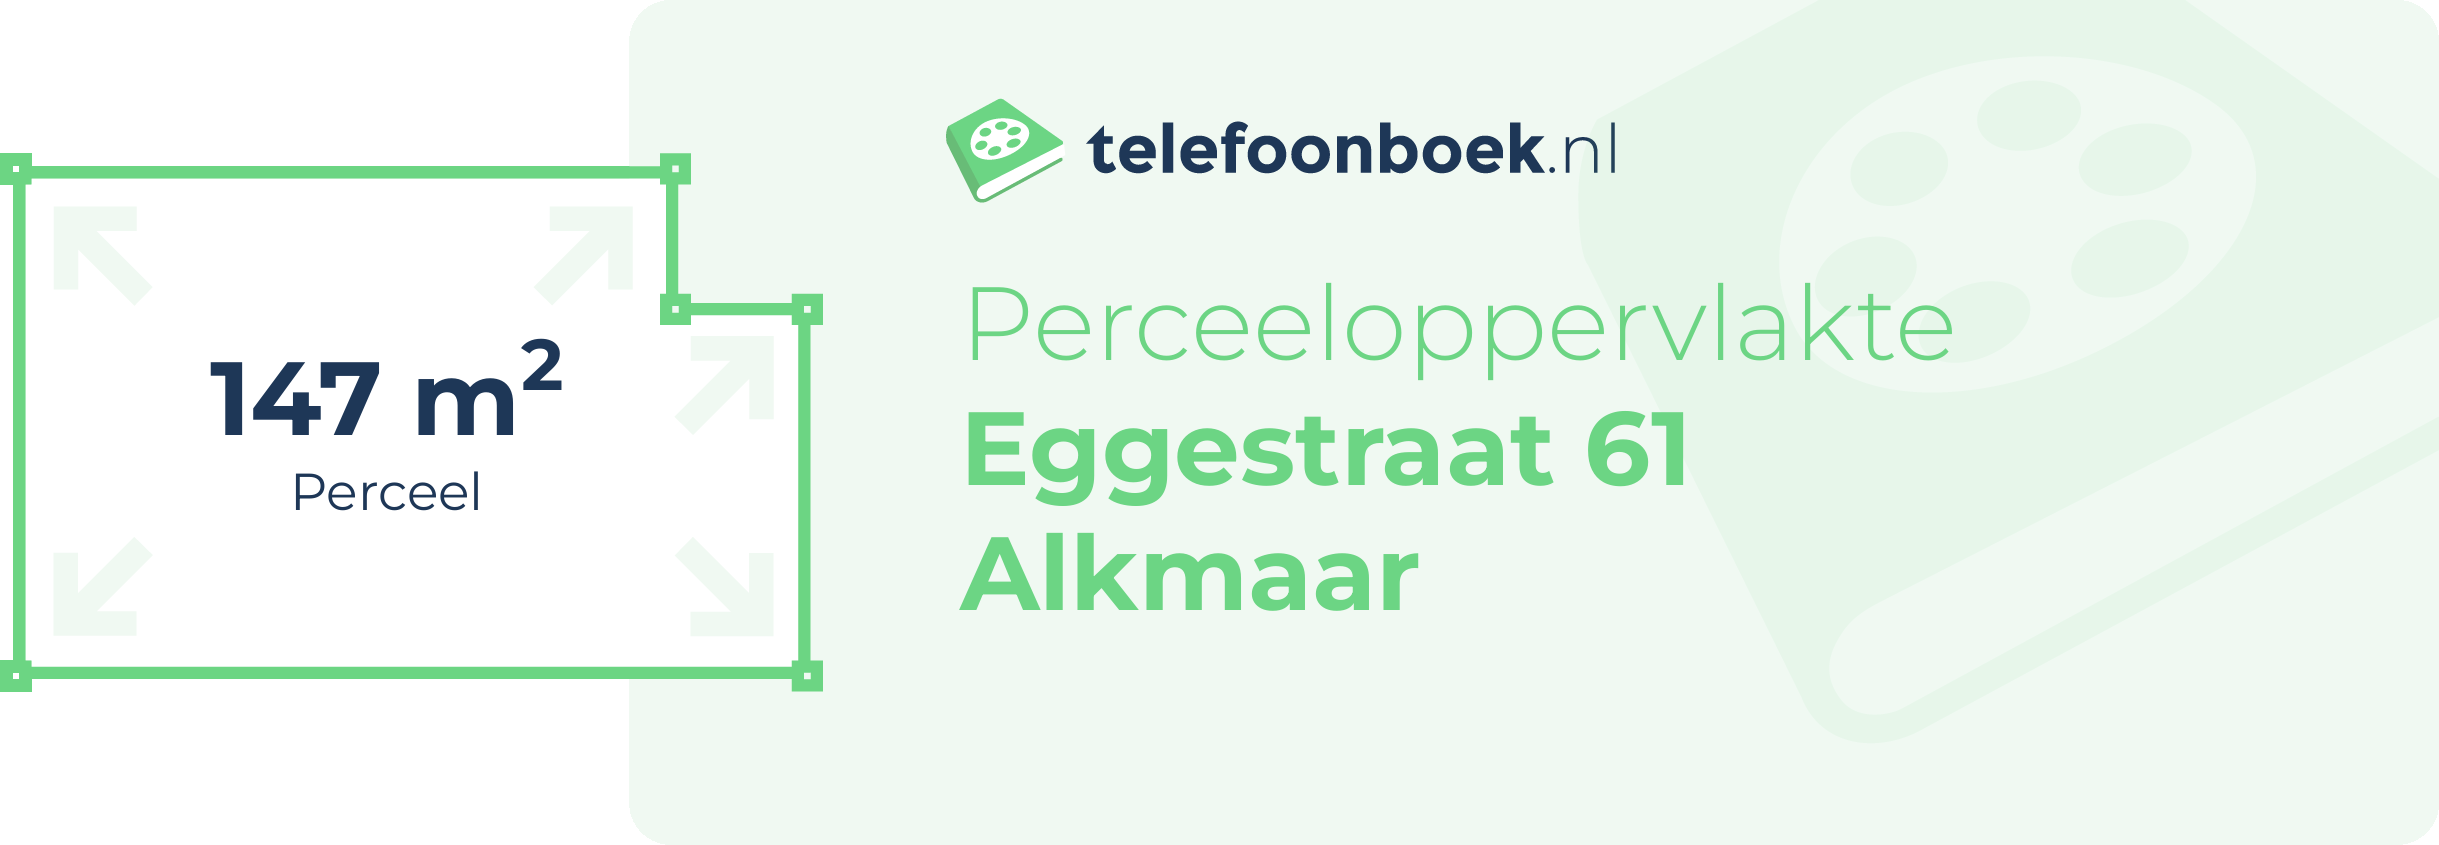 Perceeloppervlakte Eggestraat 61 Alkmaar